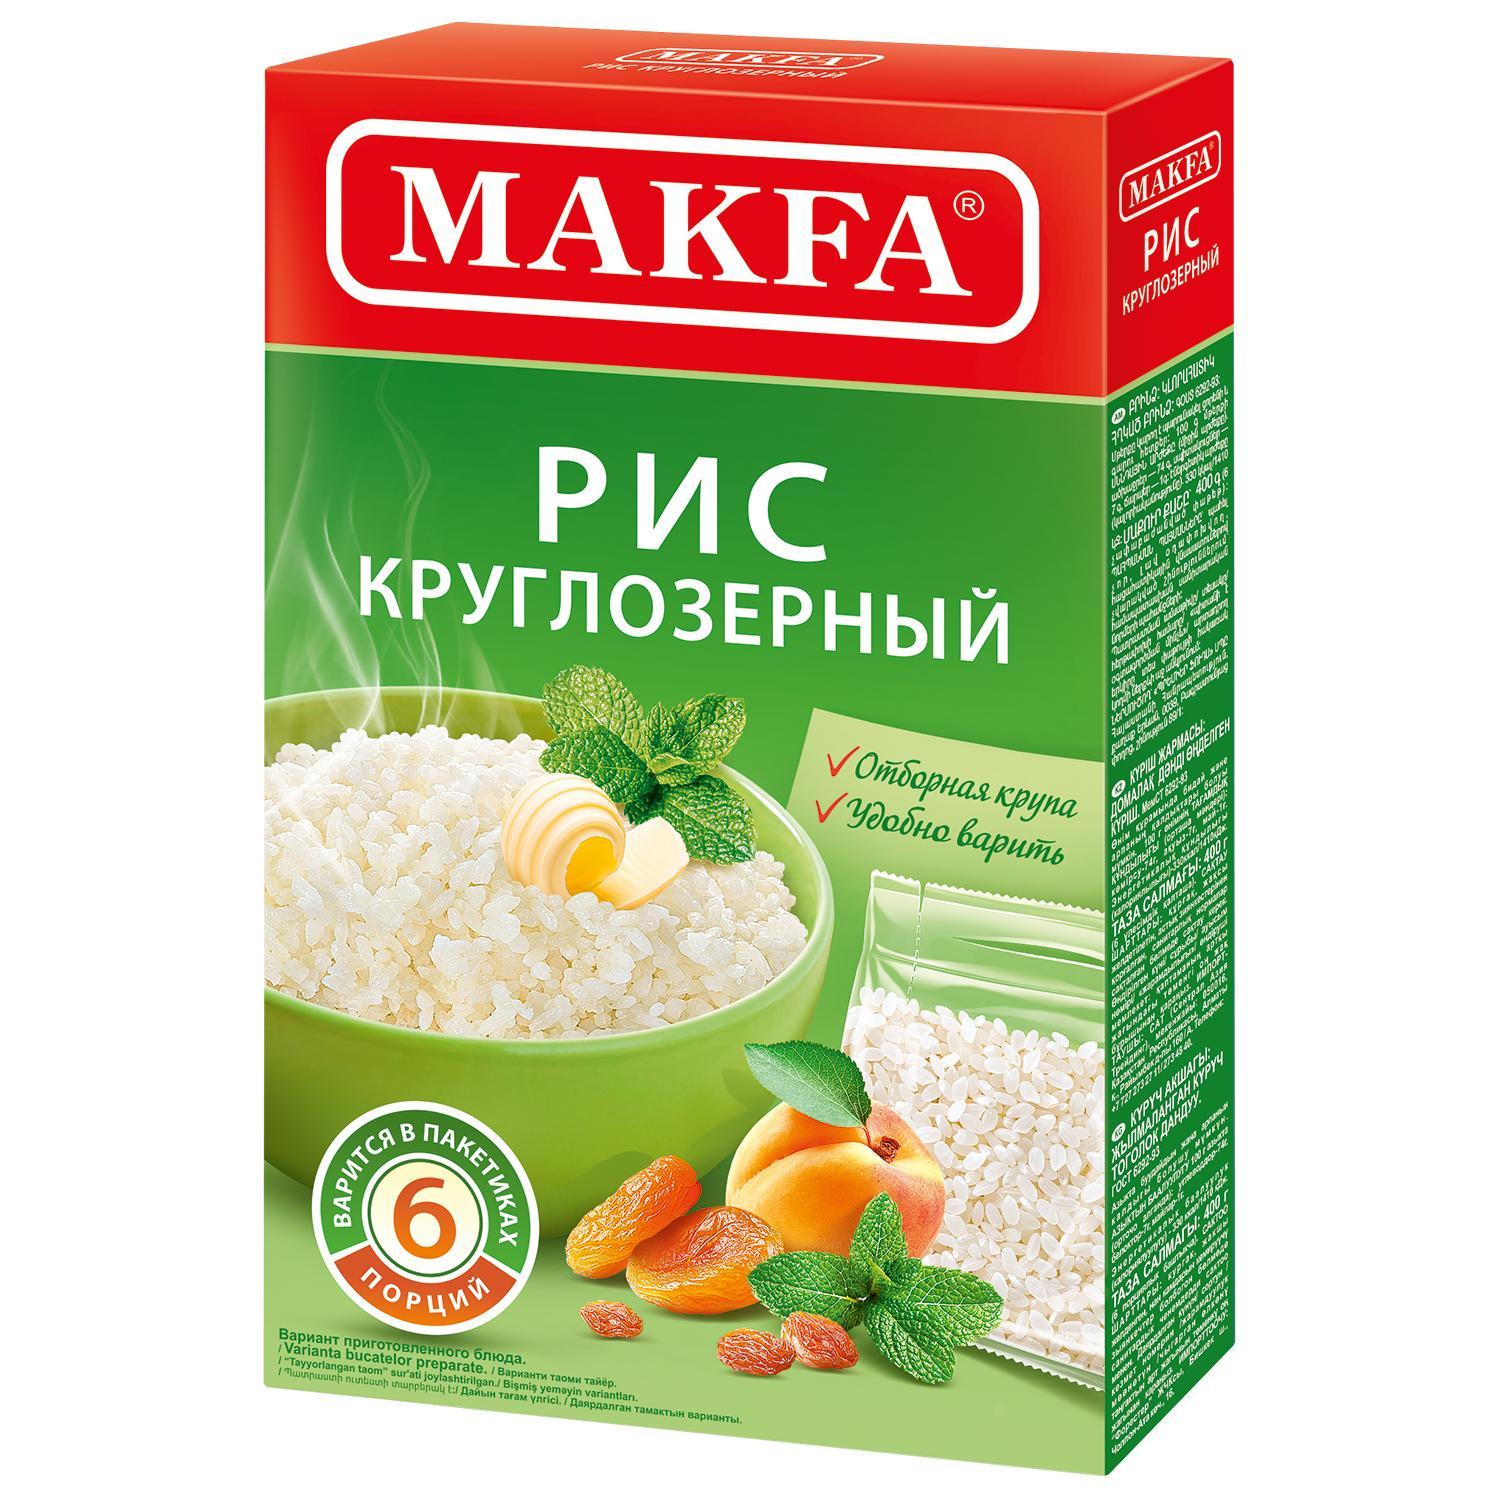 Рис круглозерный шлифованный 5 пакетов, Makfa, 400 гр., картон